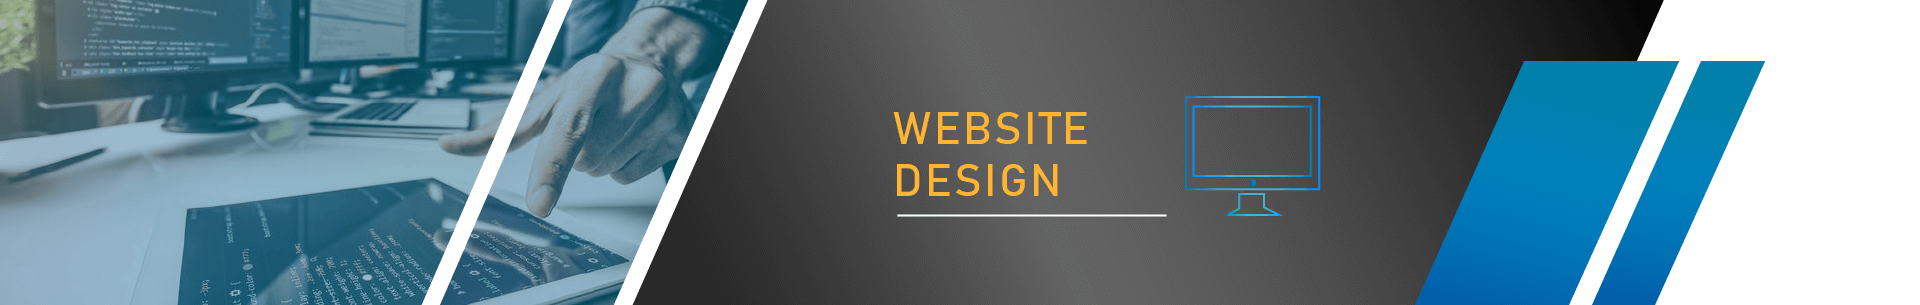 Website Design, Build Website, Webpage Design, Build Webpage